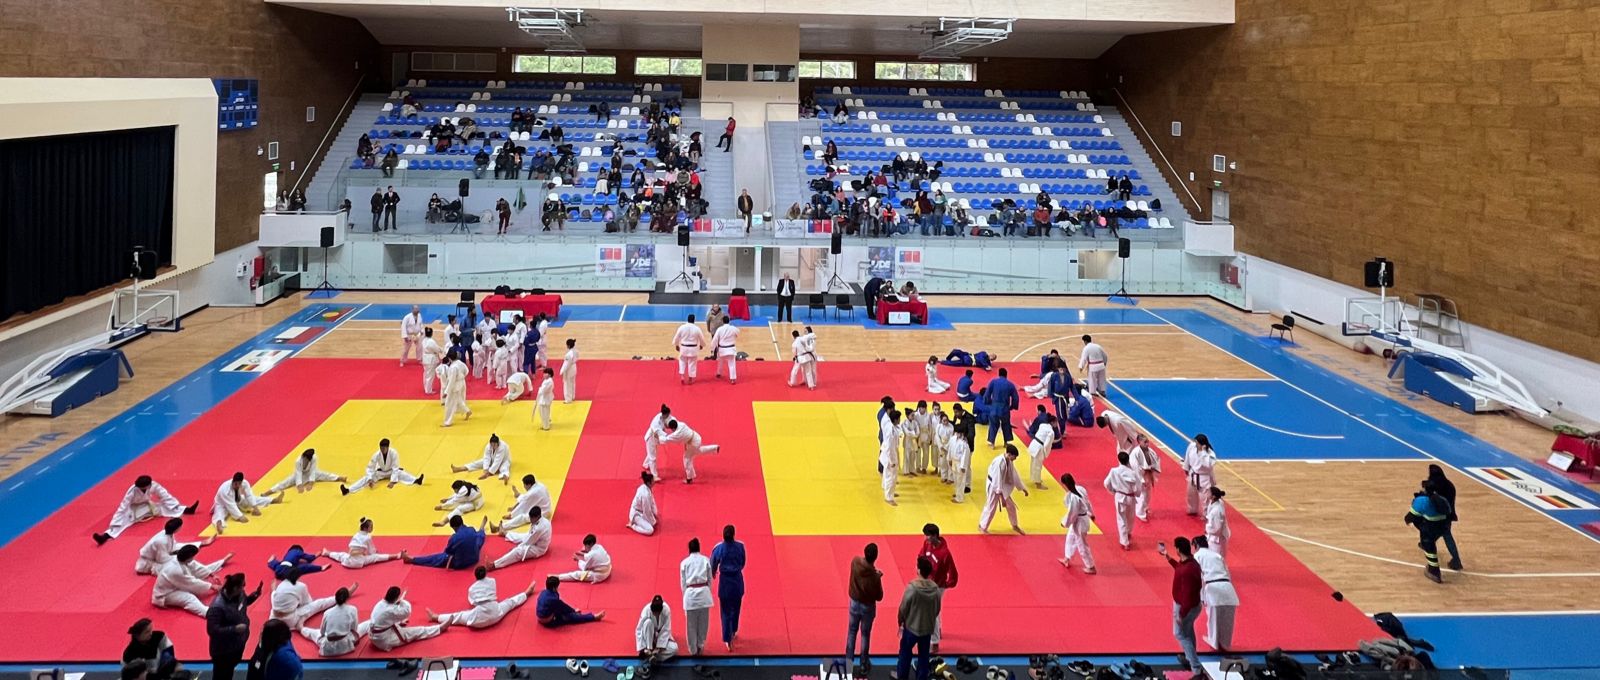 Más De 100 Competidores Participaron Del Campeonato Regional Federado Y Open De Judo En Pucón